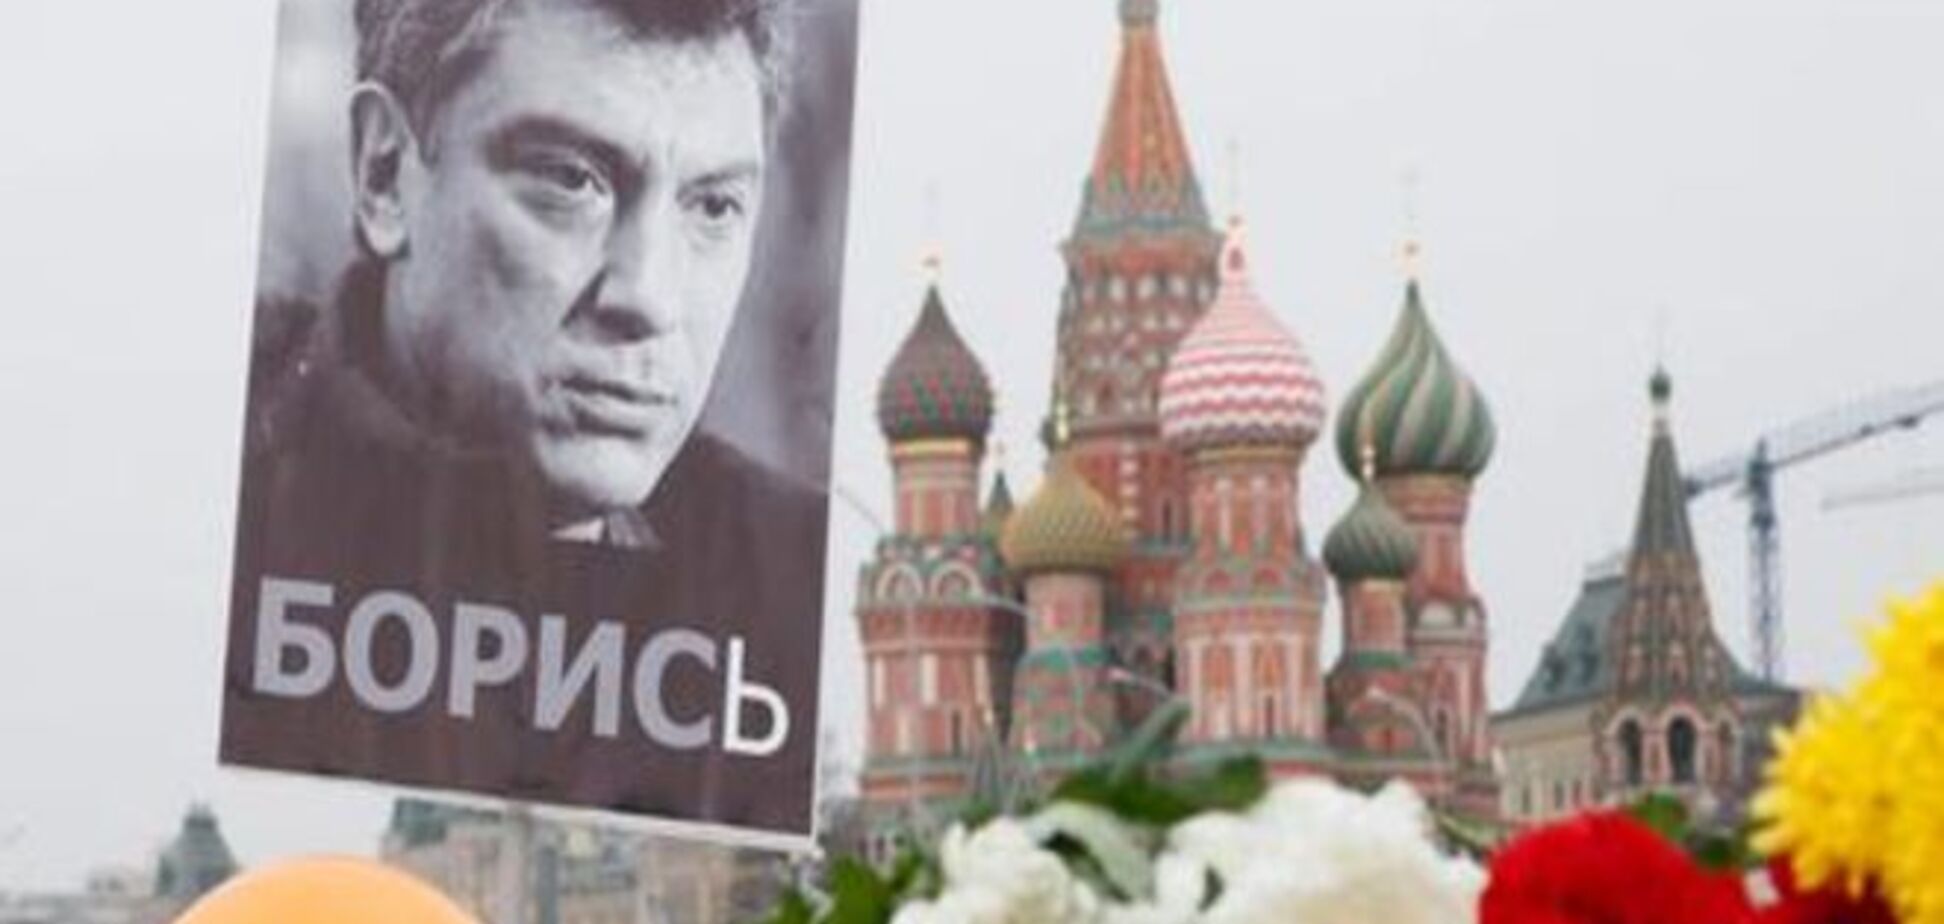 Комментарий: Российская оппозиция может не пережить смерть Бориса Немцова